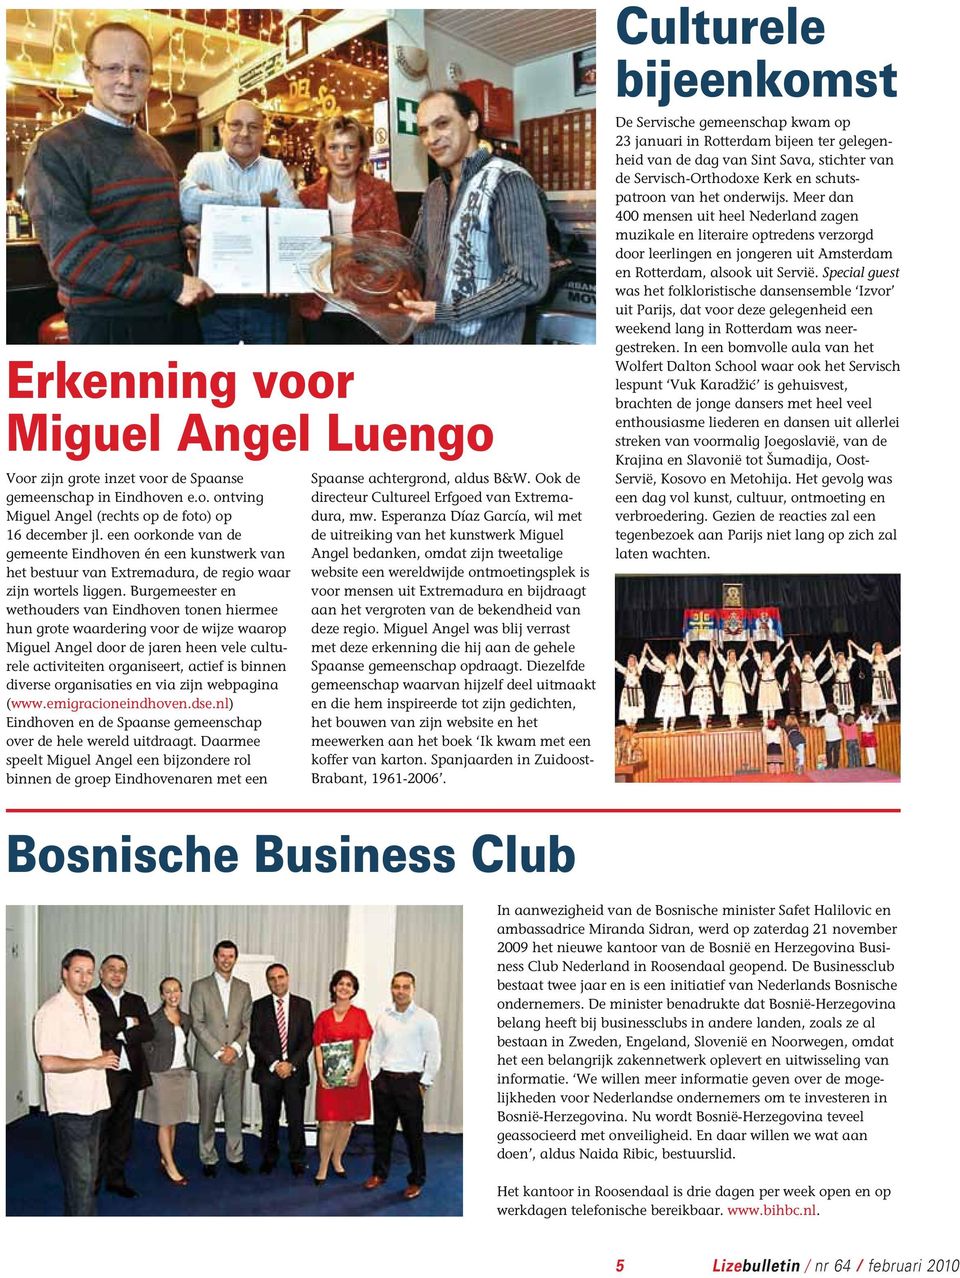 Burgemeester en wethouders van Eindhoven tonen hiermee hun grote waardering voor de wijze waarop Miguel Angel door de jaren heen vele culturele activiteiten organiseert, actief is binnen diverse